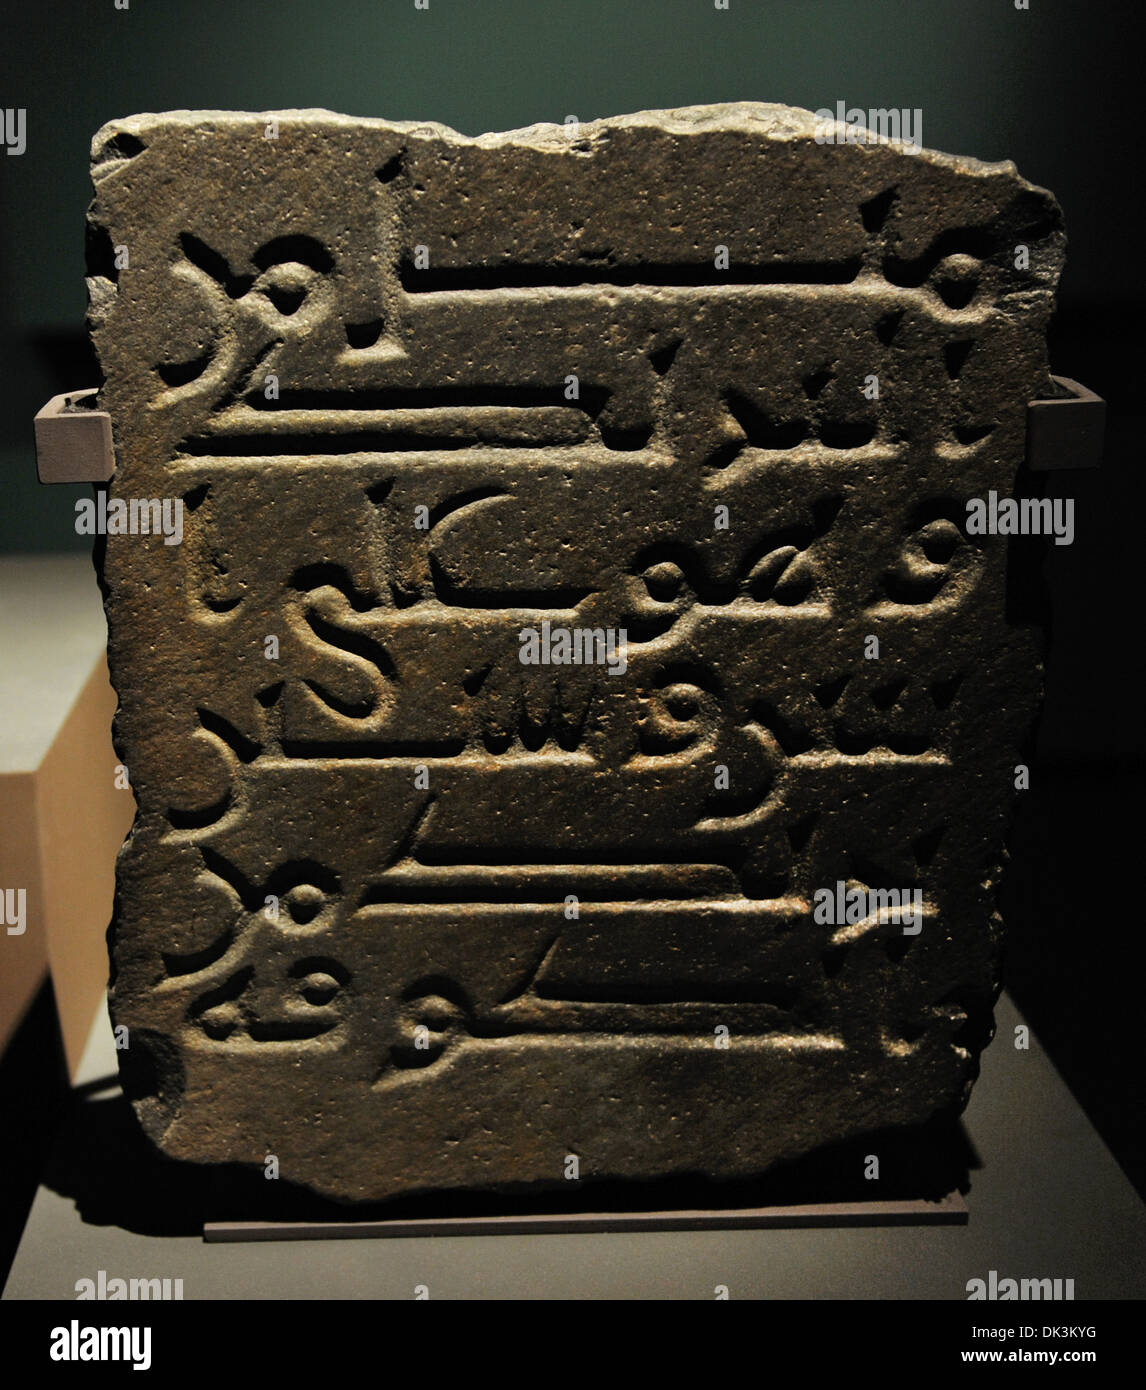 Islamische Kunst. Meilenstein. Späten 8. Jahrhundert. Granit oder Basalt. 50 x 42 x 13 cm. Darb Zubayda. Nationalmuseum, Riyadh. Saudi-Arabien Stockfoto